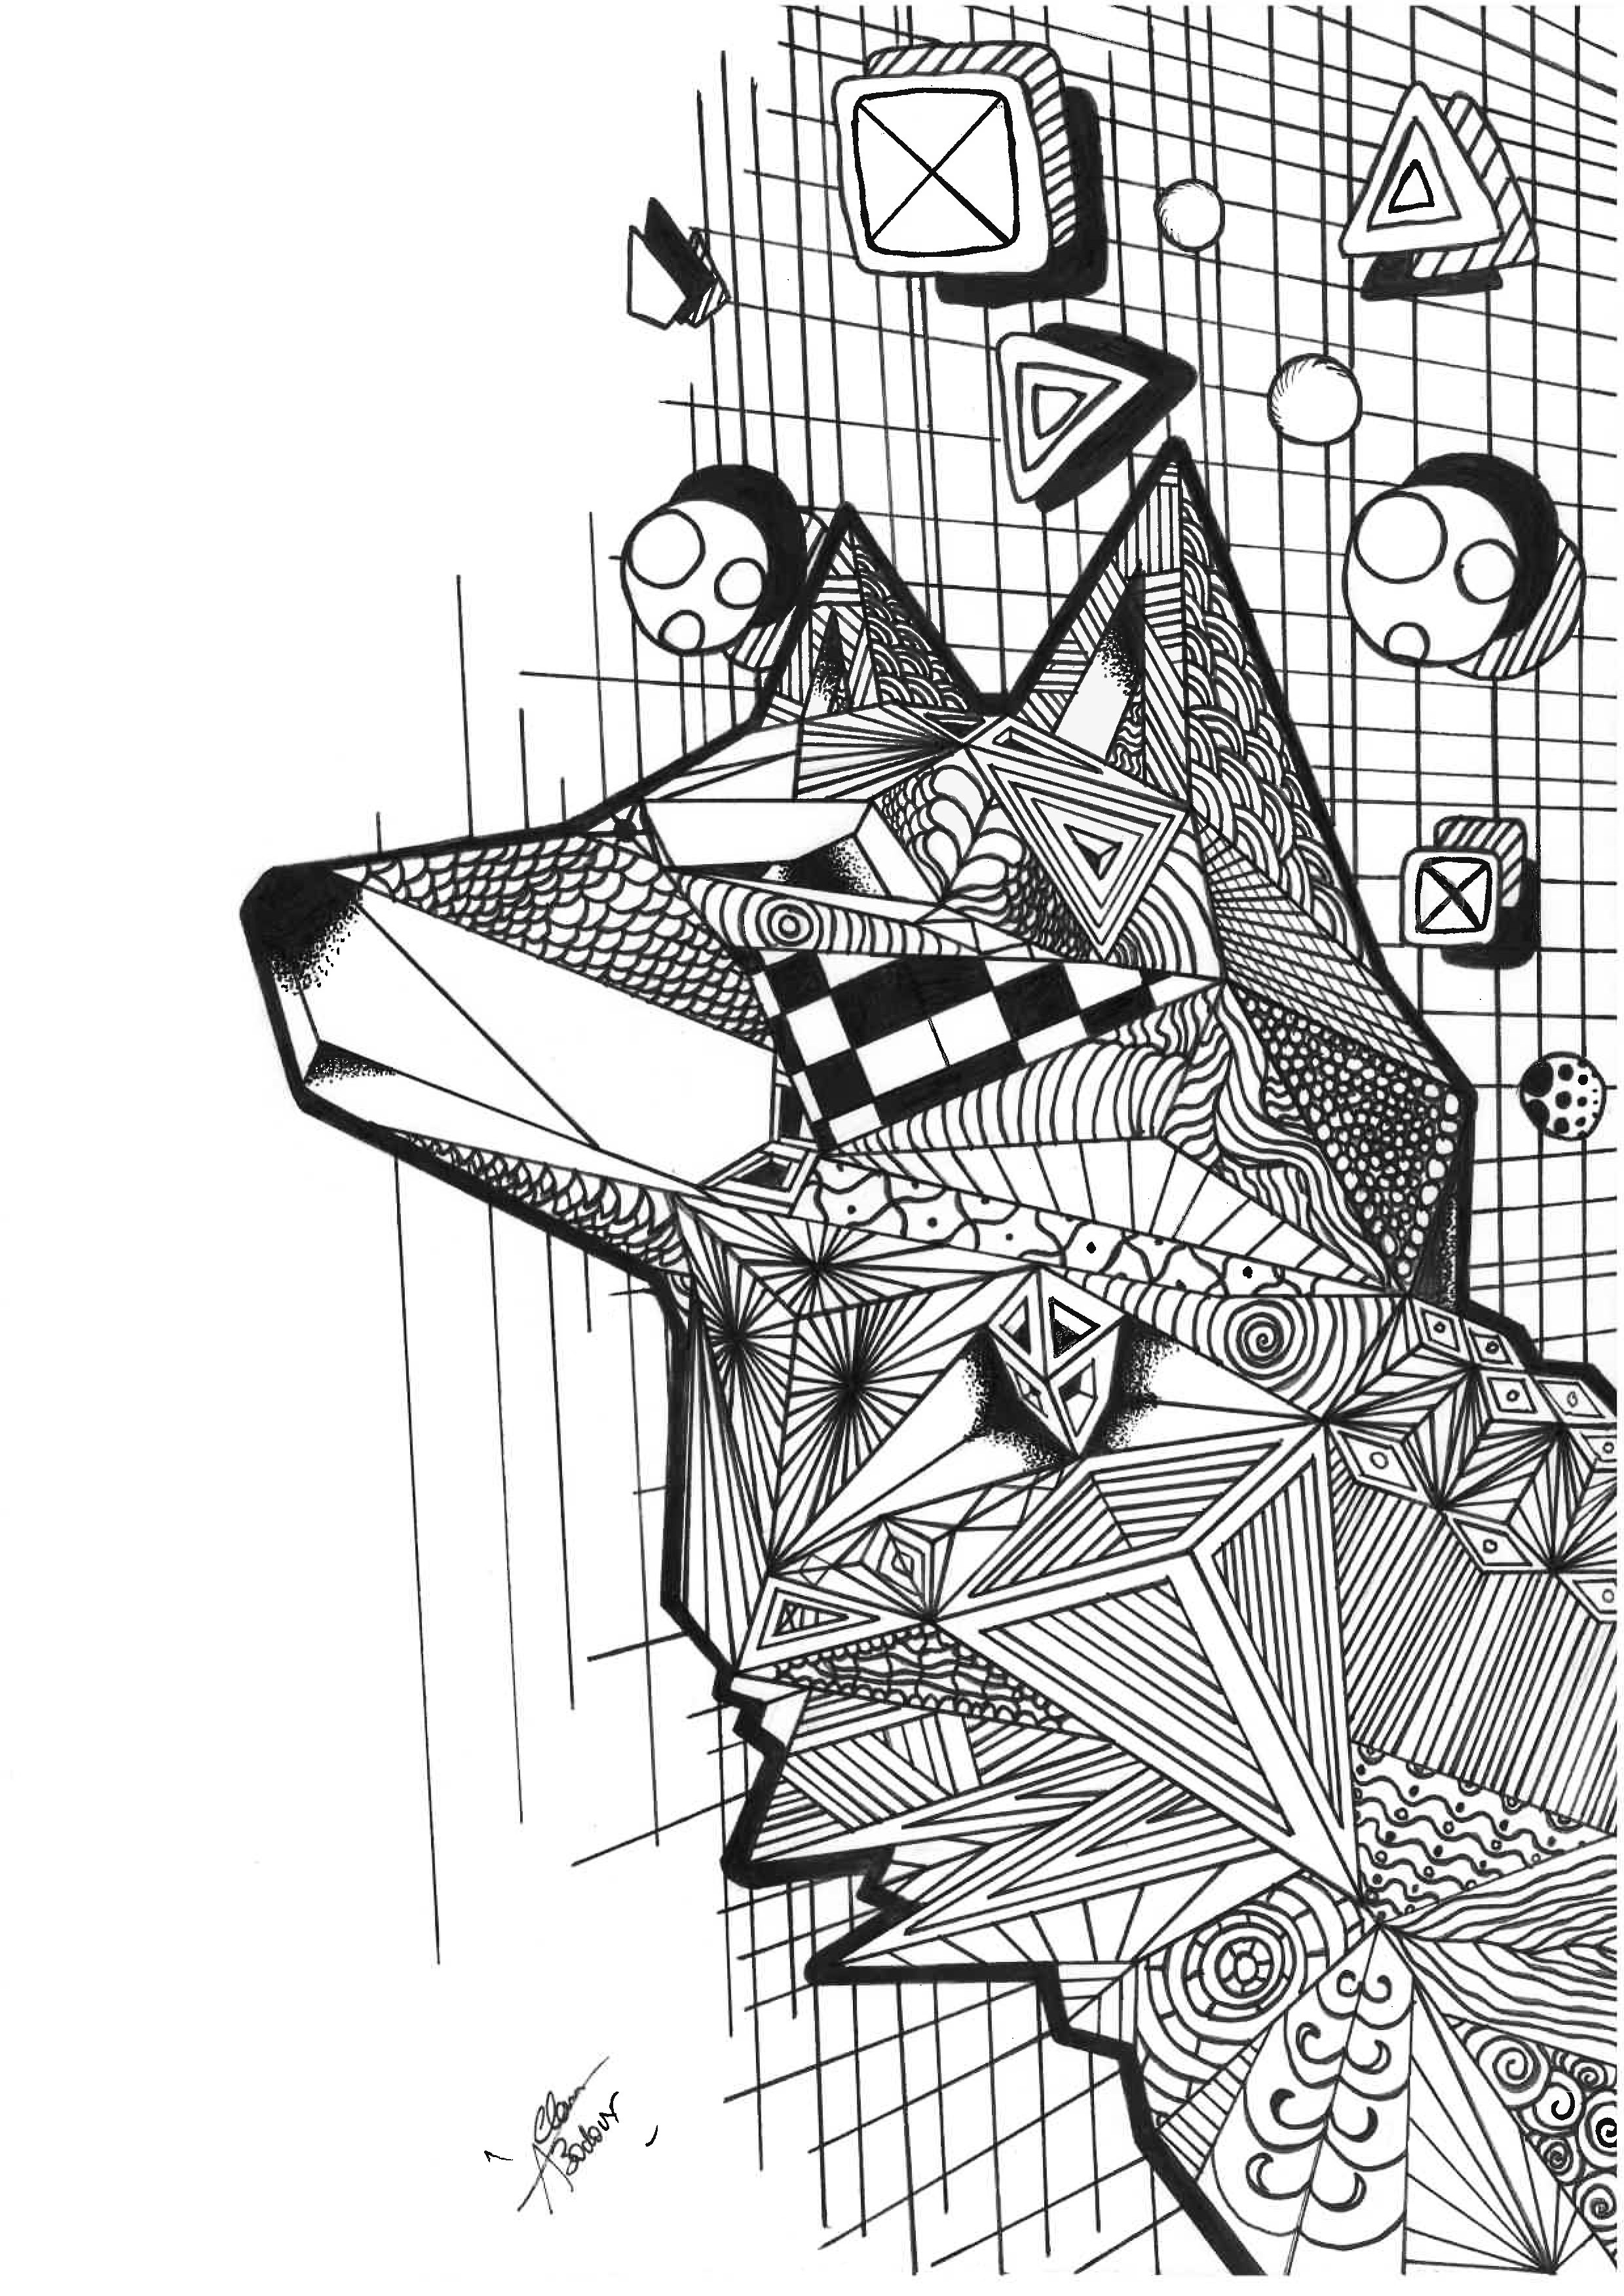 Colorización de un lobo en forma de zentangle y cúbico. Con líneas cúbicas y patrones de Zentangle, esta página para colorear es a la vez compleja y fascinante. El lobo representado es a la vez poderoso y misterioso, y su composición es a la vez desafiante y relajante, Artista : Allan